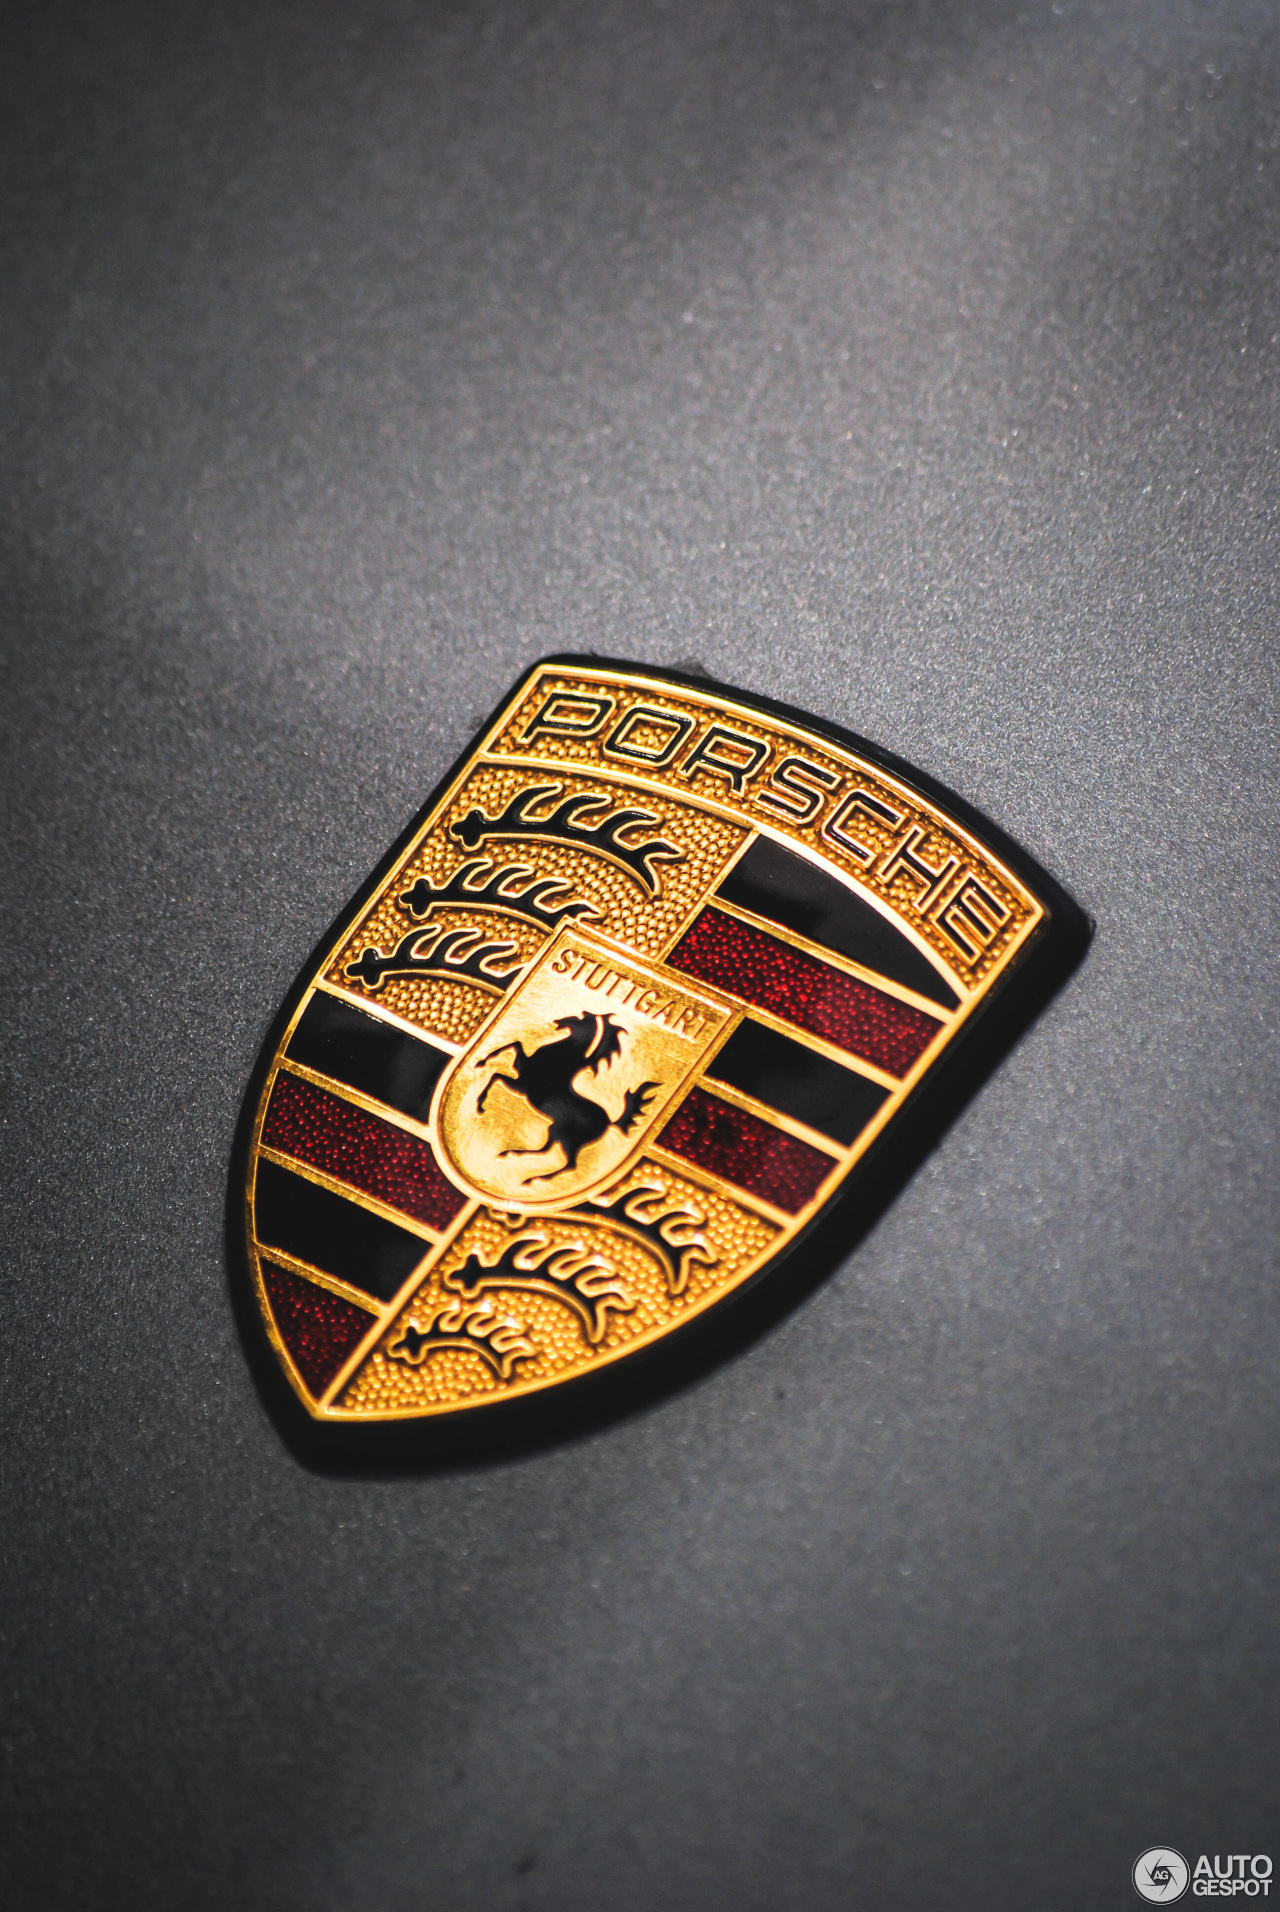 Porsche 997 GT2